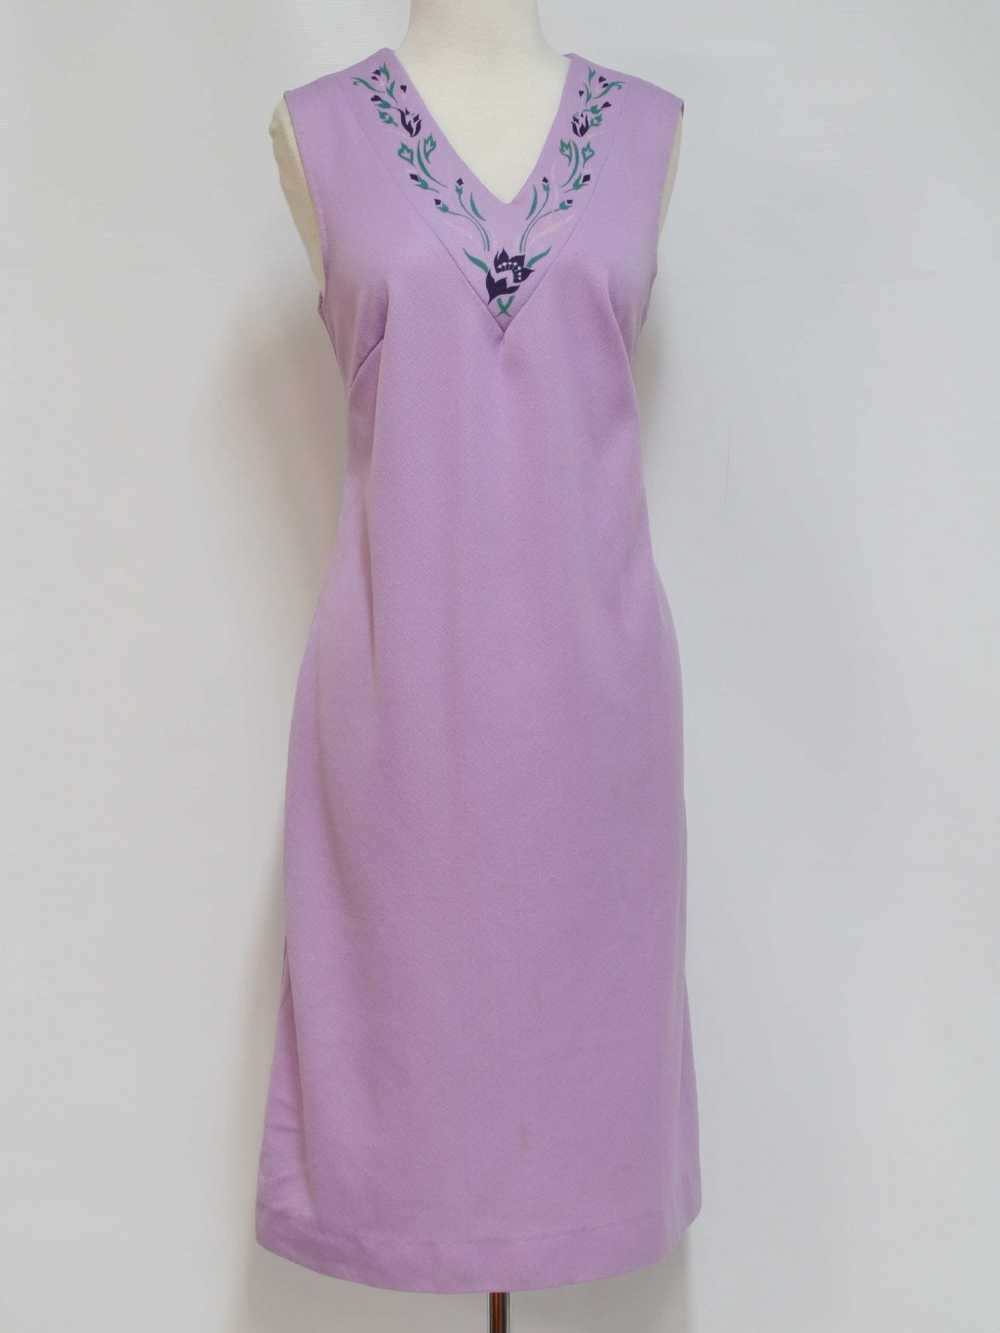 1970's Knit Dress - image 3